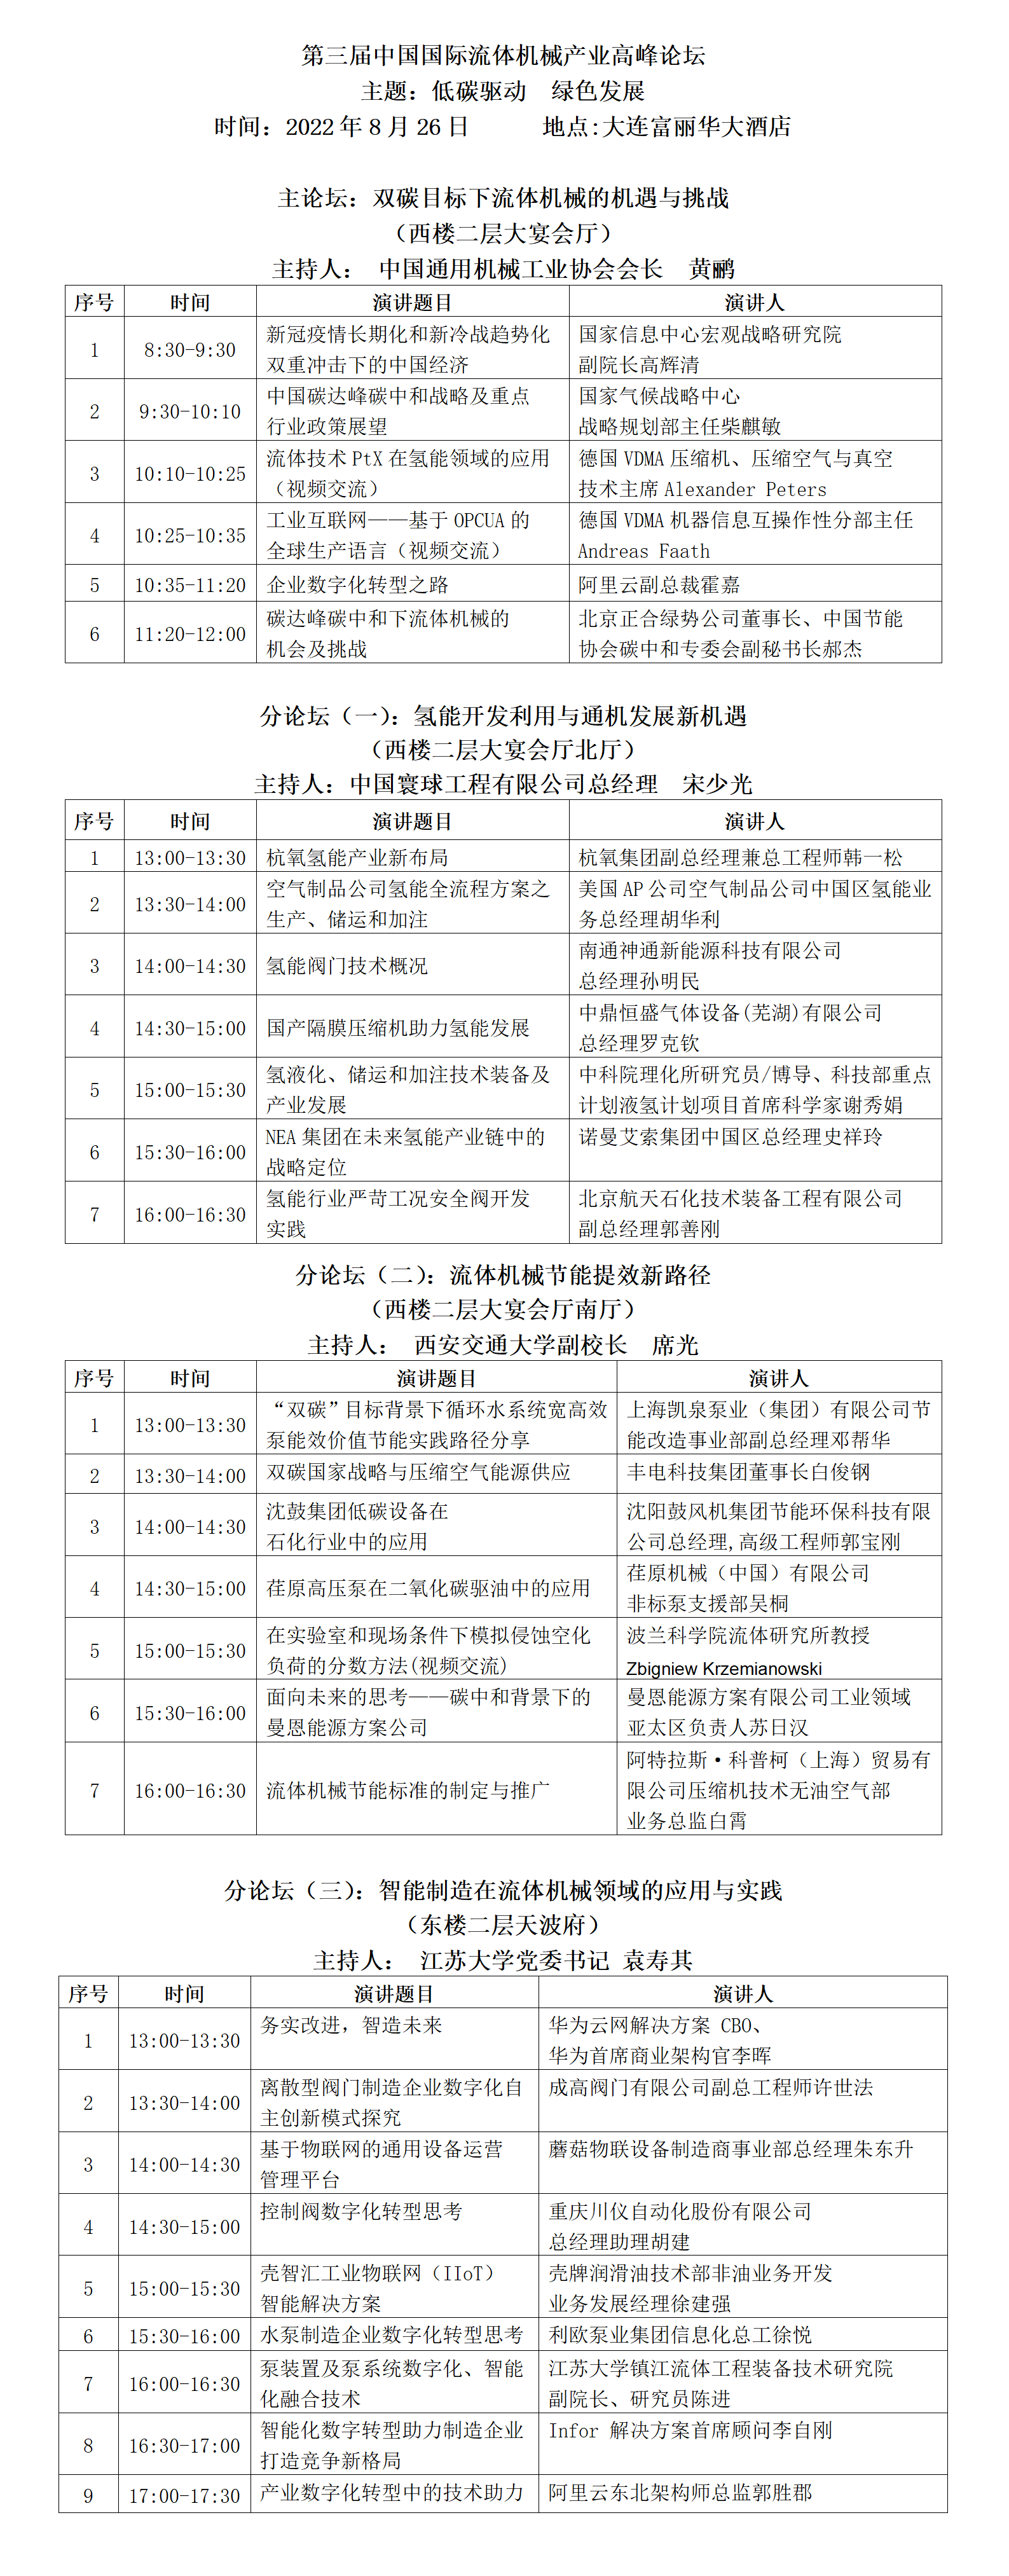 第三届中国国际流体机械产业高峰论坛议程安排_01.png